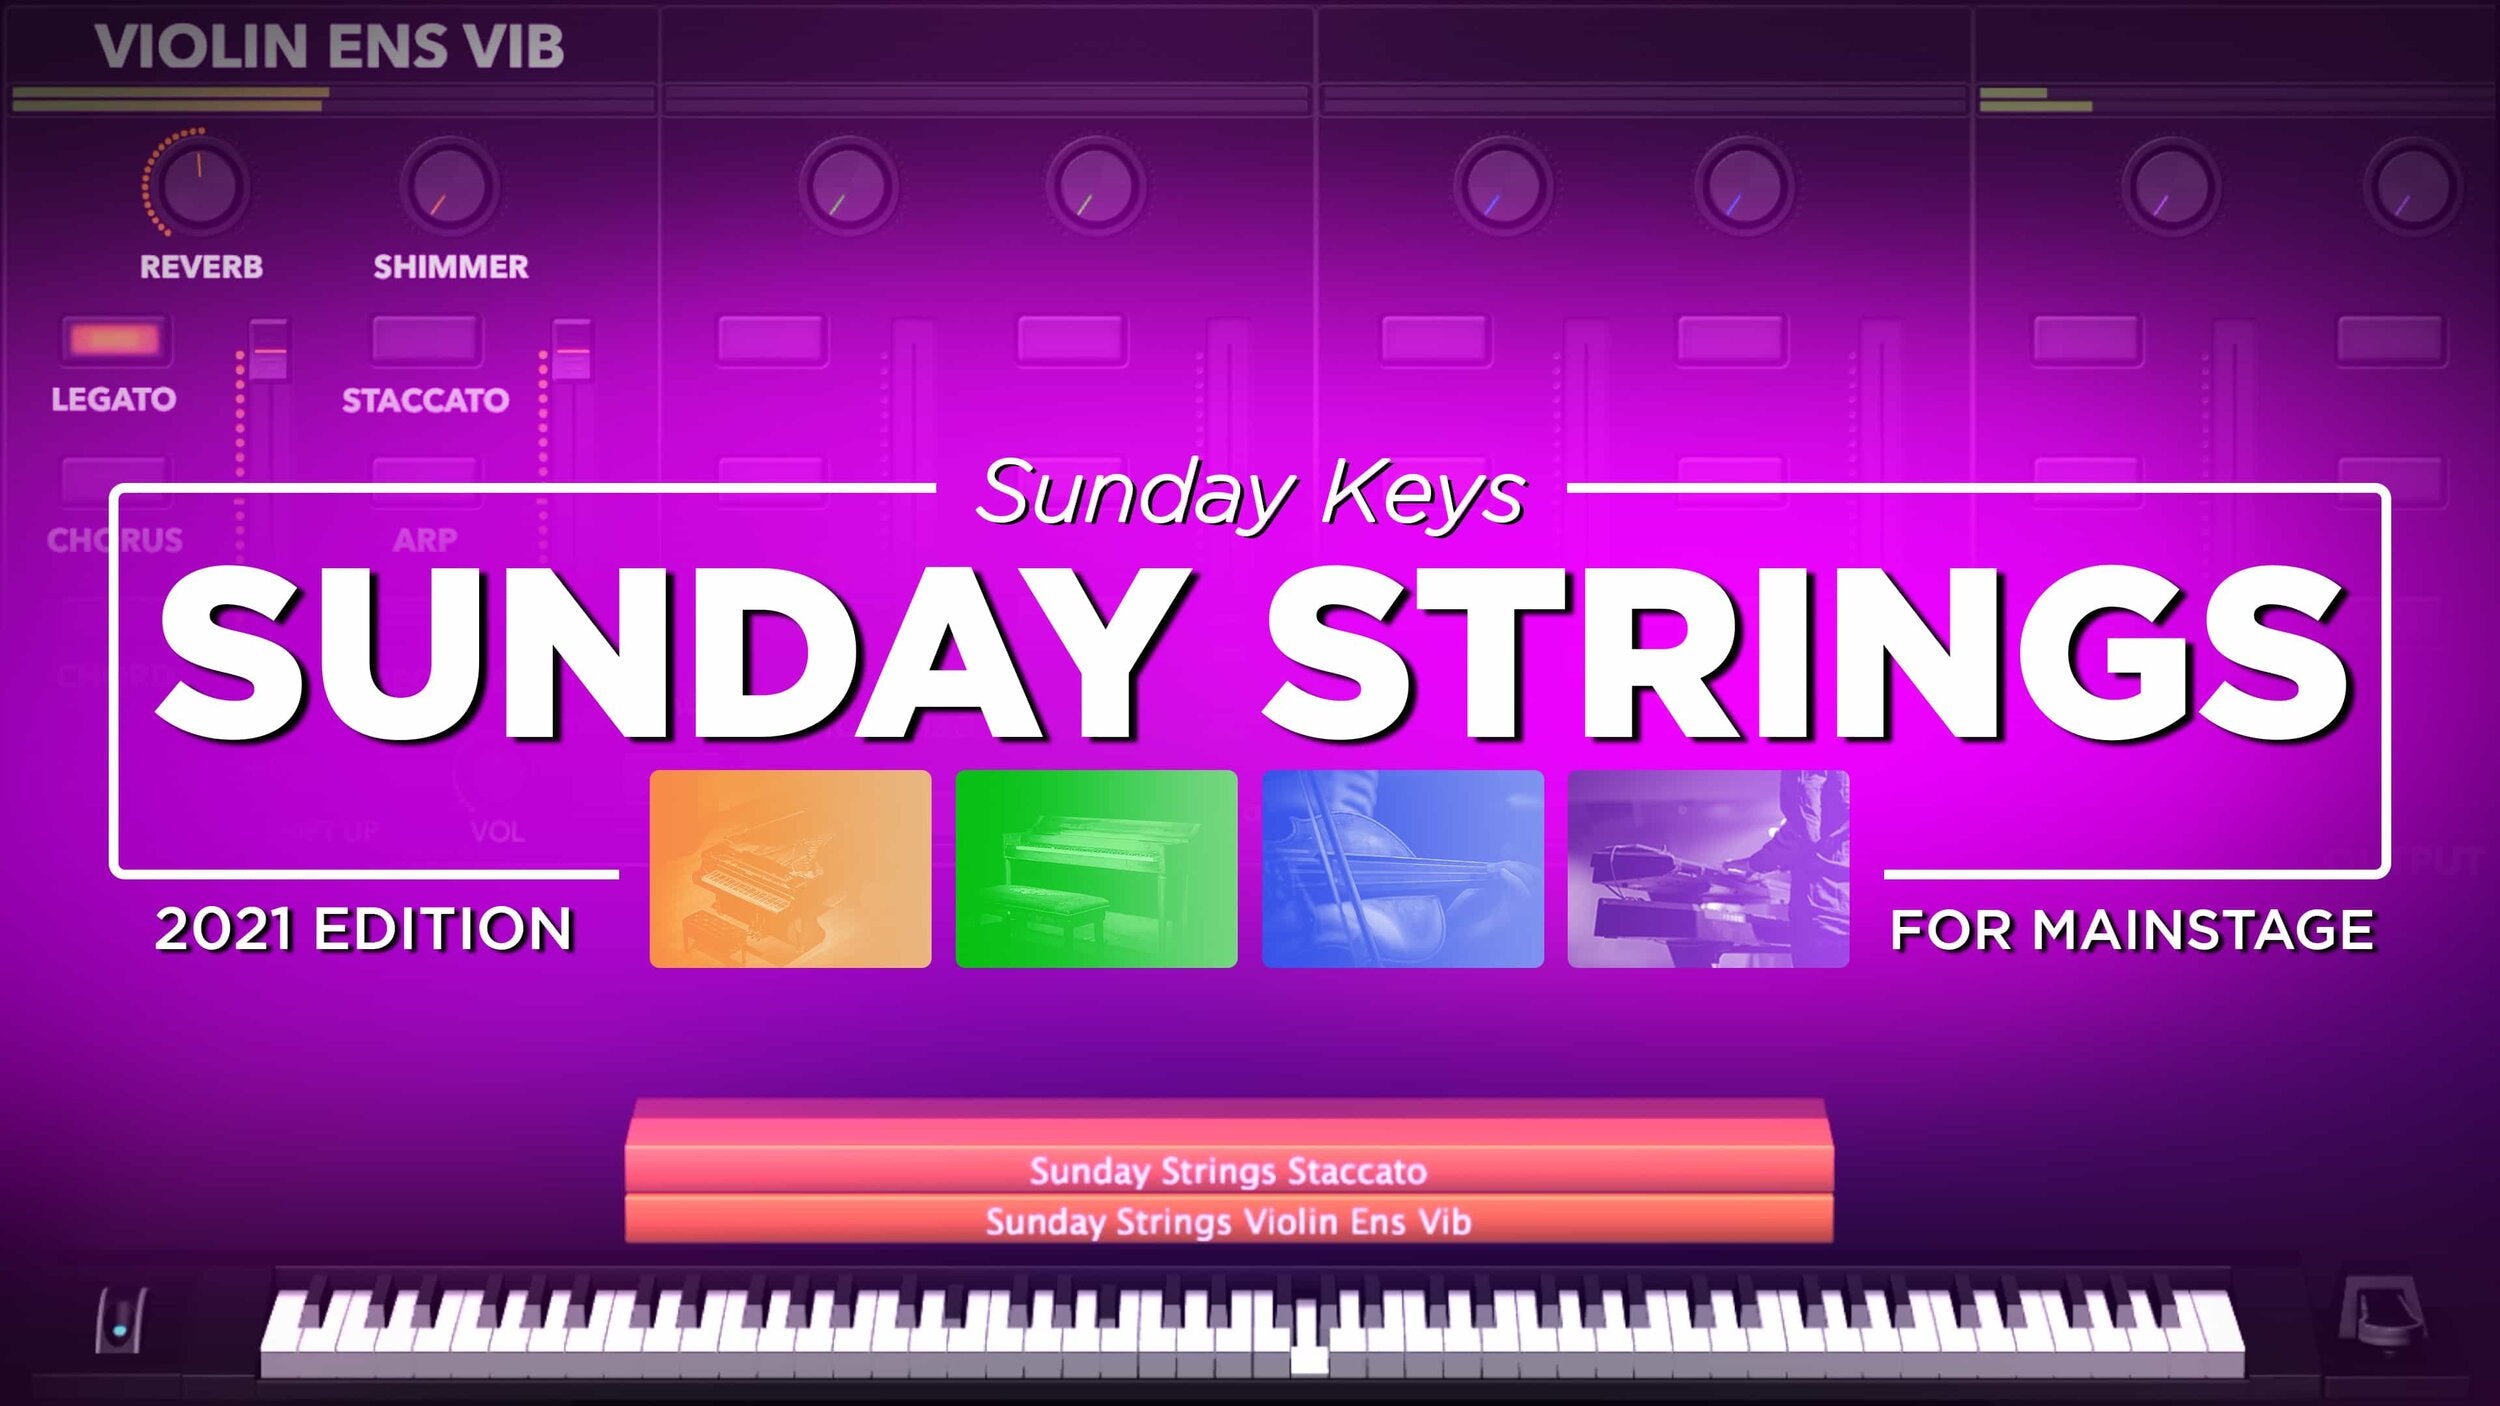 Sunday Strings: Custom-Sampled Strings for Worship - Sunday Keys for MainStage 2021